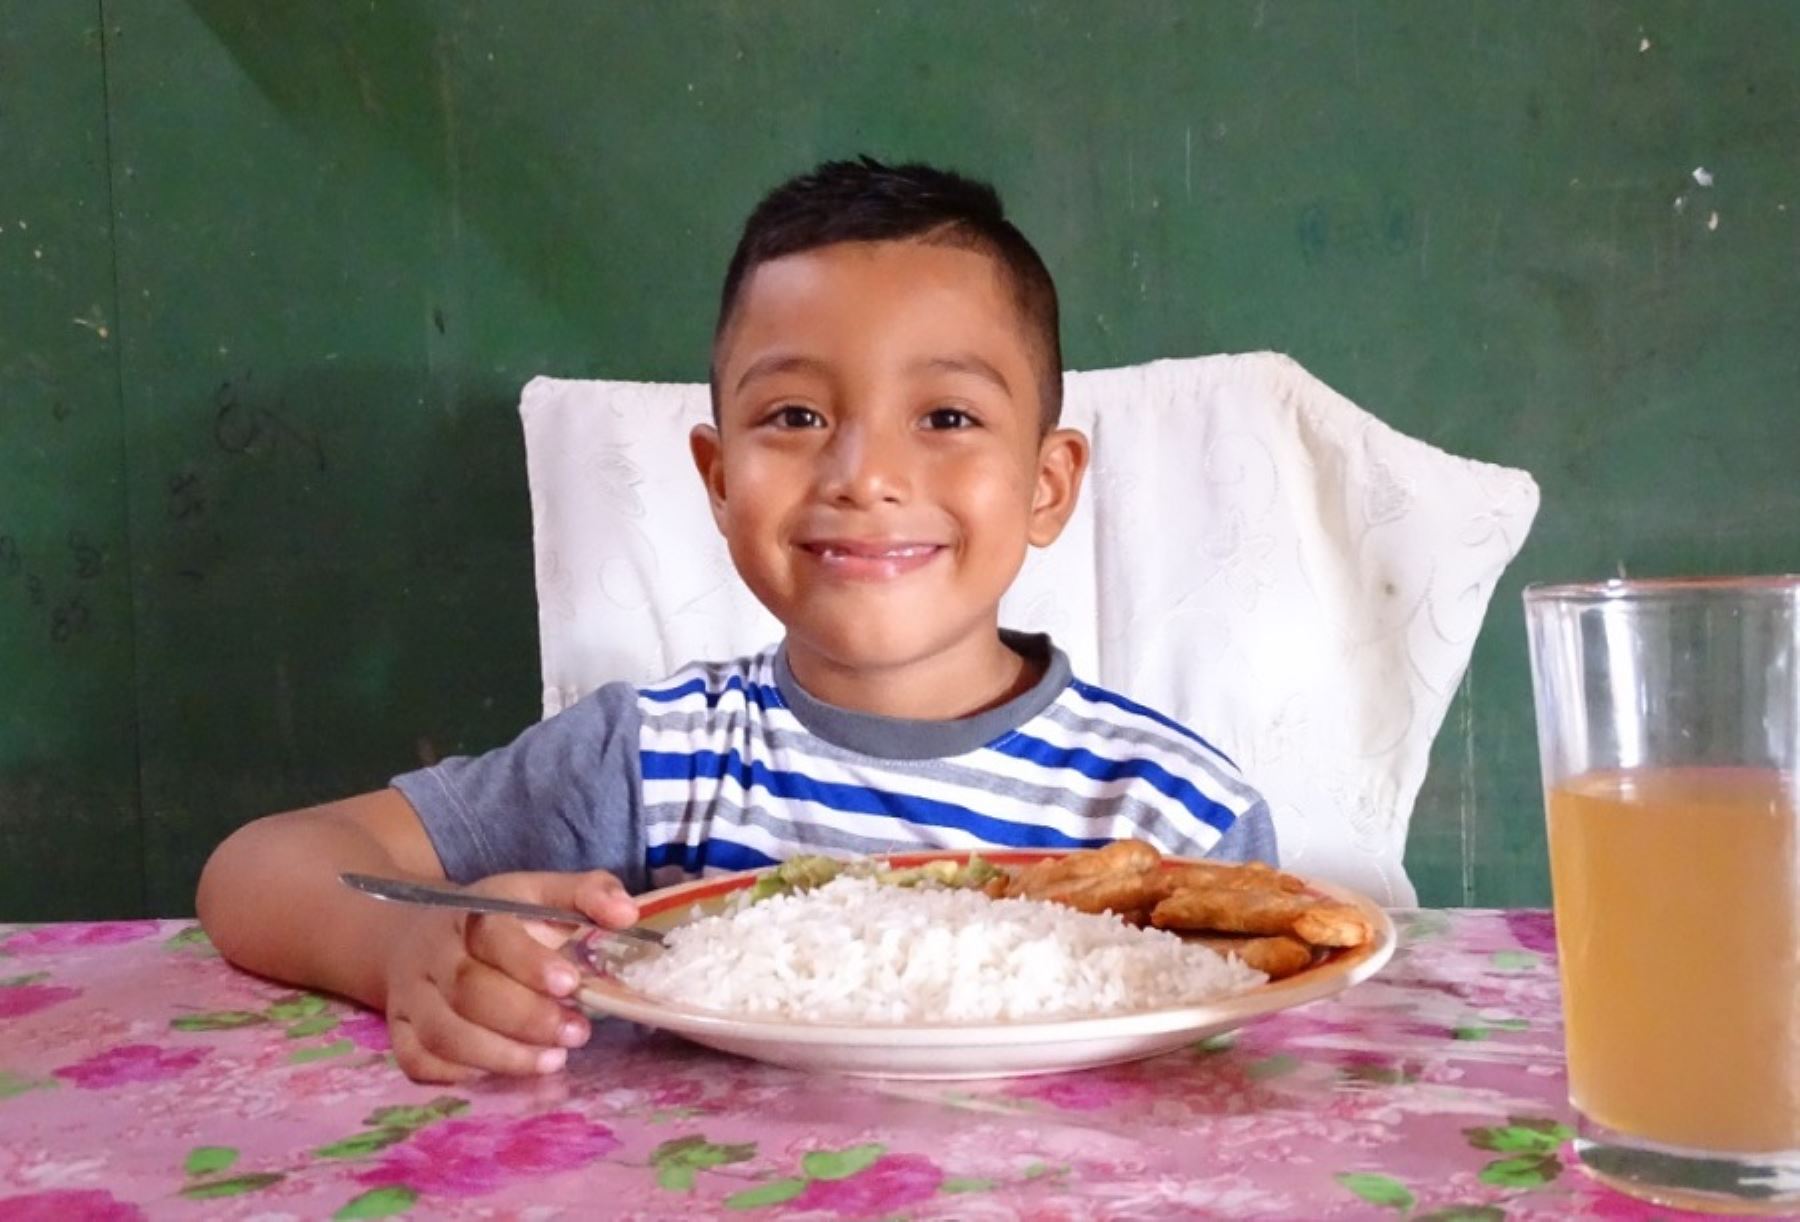 El Programa Nacional de Alimentación Escolar Qali Warma, del Ministerio de Desarrollo e Inclusión Social (Midis), asegura el servicio alimentario hasta el último día de clases del presente año en el ámbito nacional, con la finalidad de contribuir a mejorar la atención en clases, la asistencia escolar y los hábitos alimenticios.